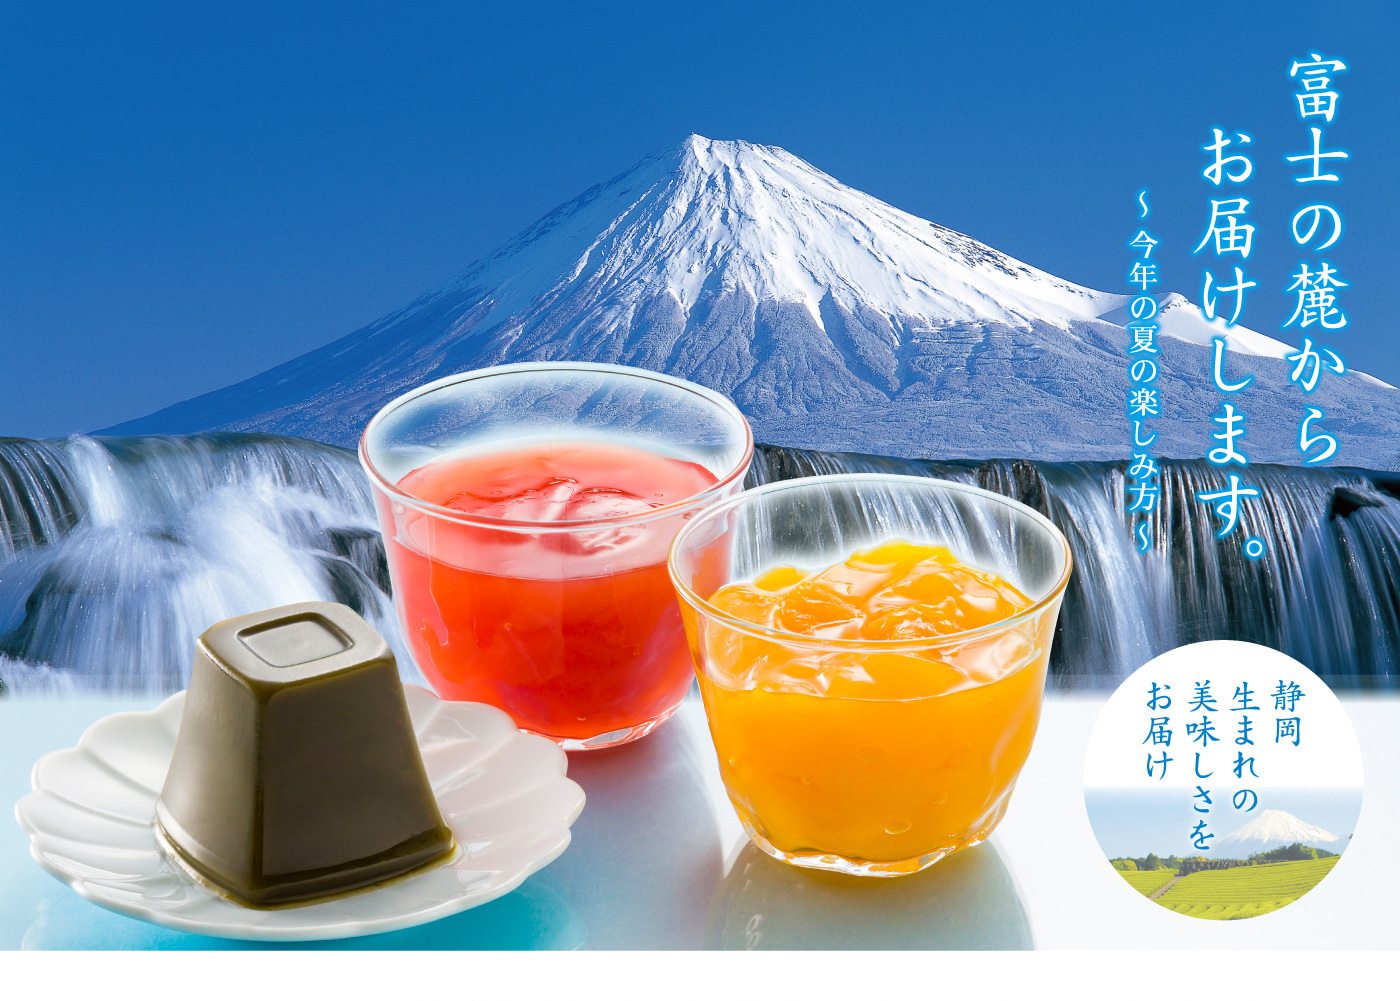 富士の麓からお届けします。～今年の夏の楽しみ方～静岡生まれの美味しさをお届け